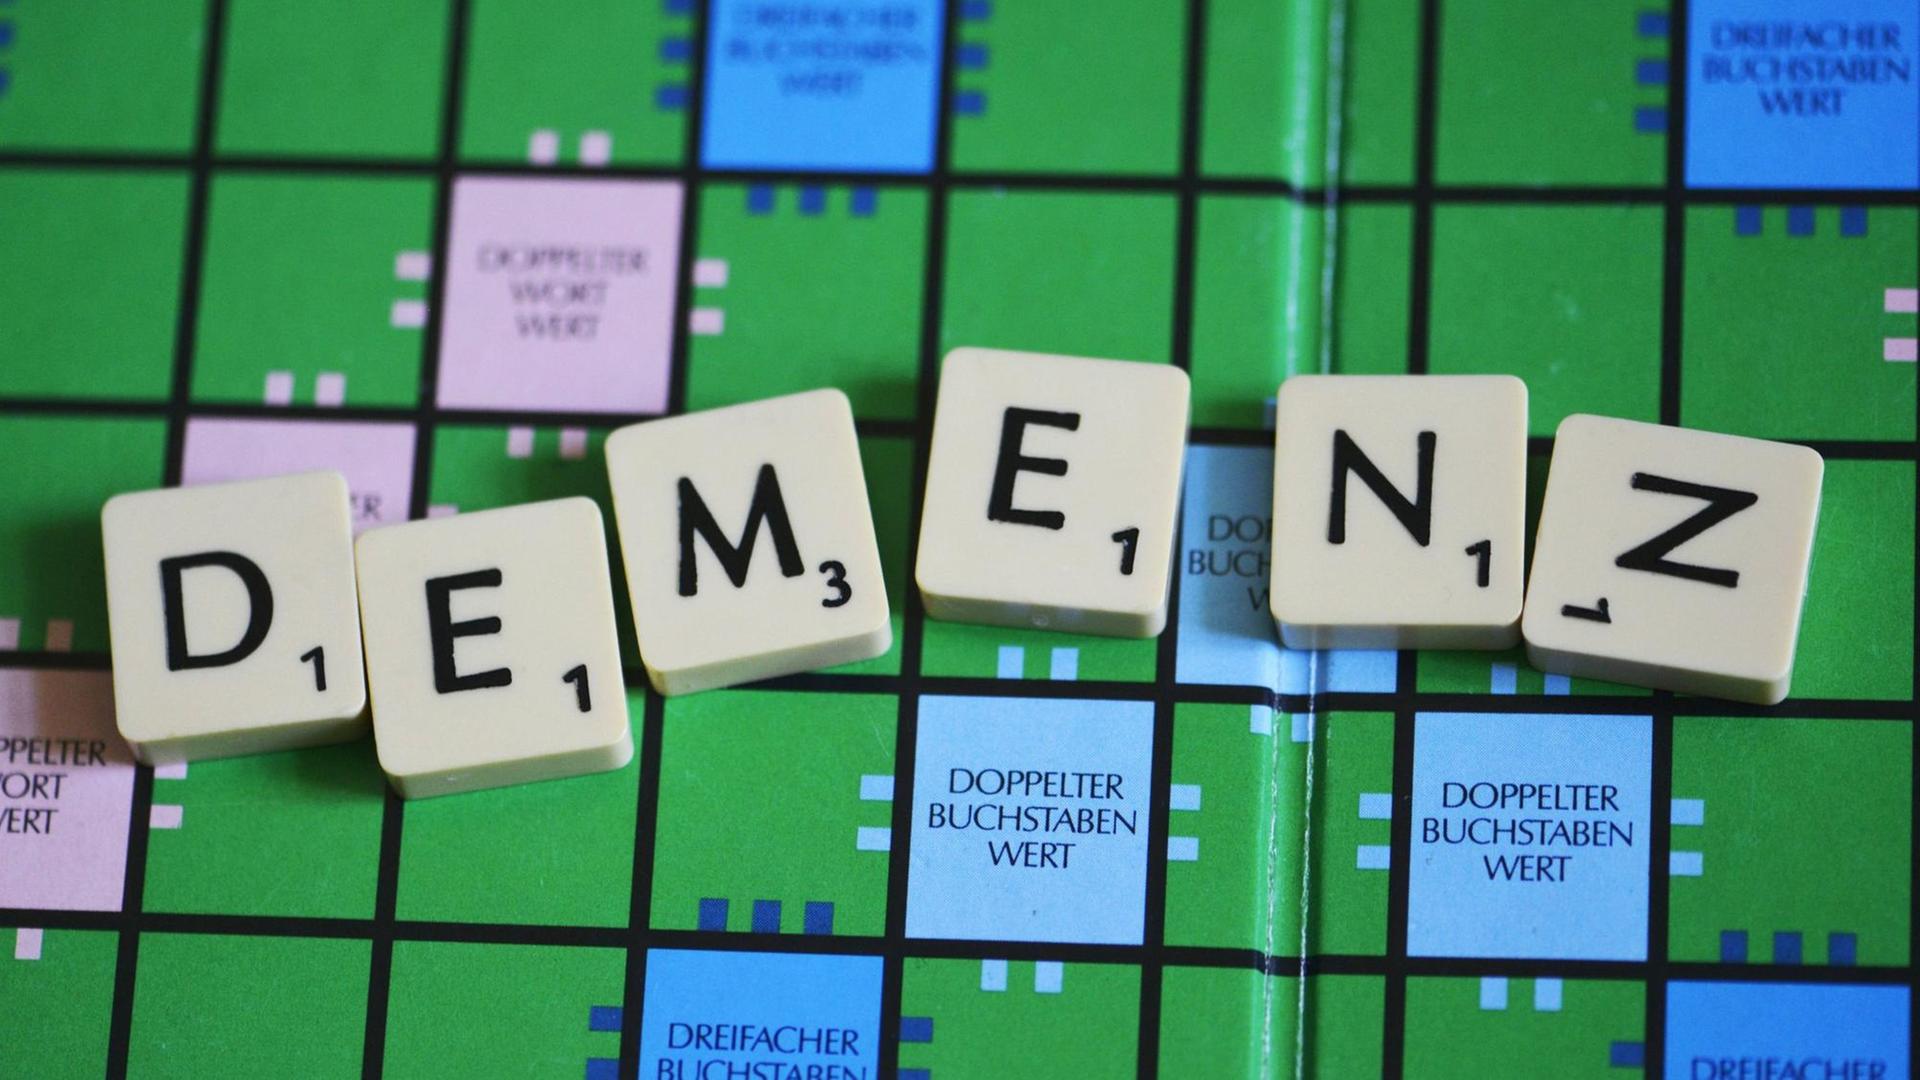 Demenz, geschrieben auf einem Scrabble-Brett mit Buchstabensteinen.